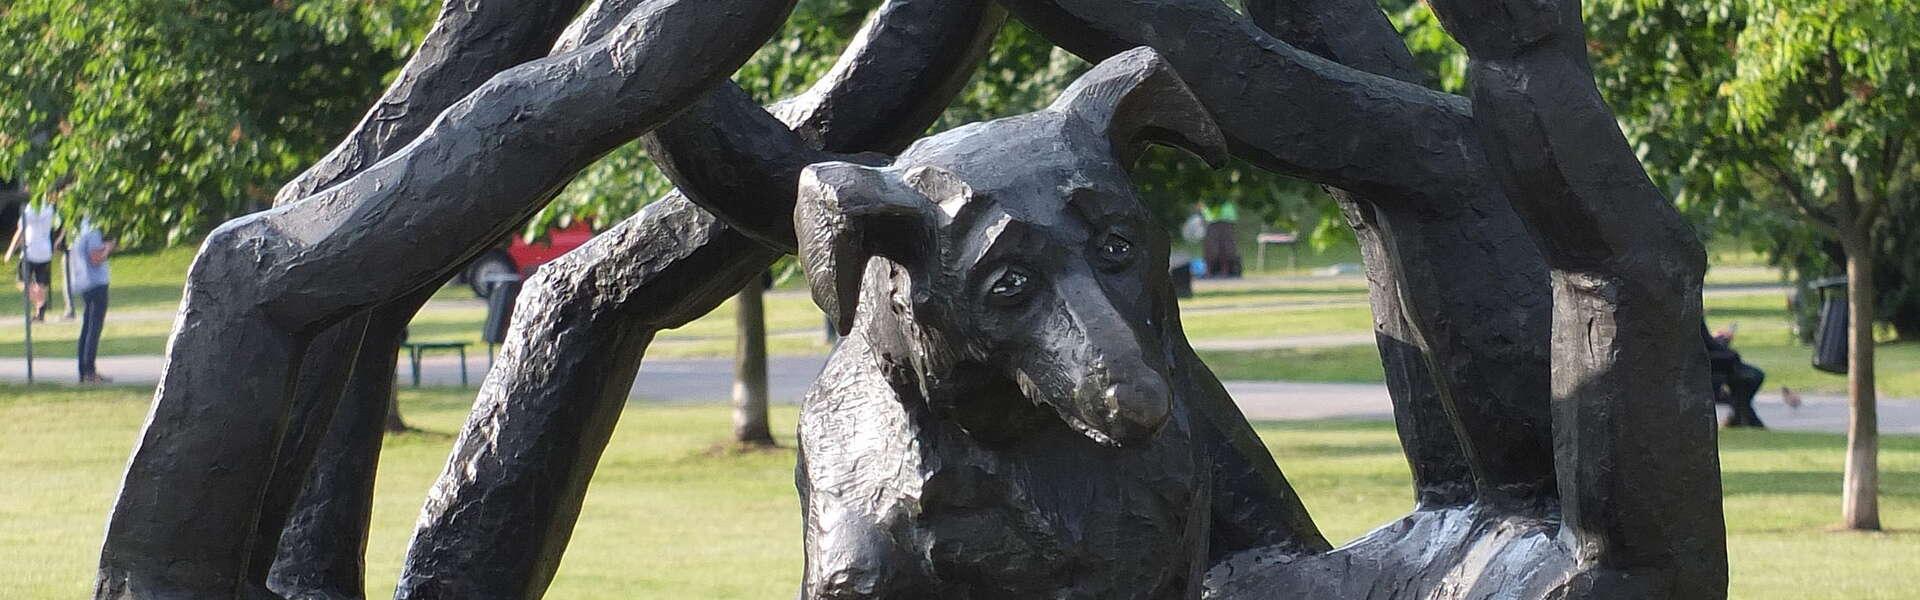 Pomnik na którym widać siedzącego psa z wyciagniętą łapą